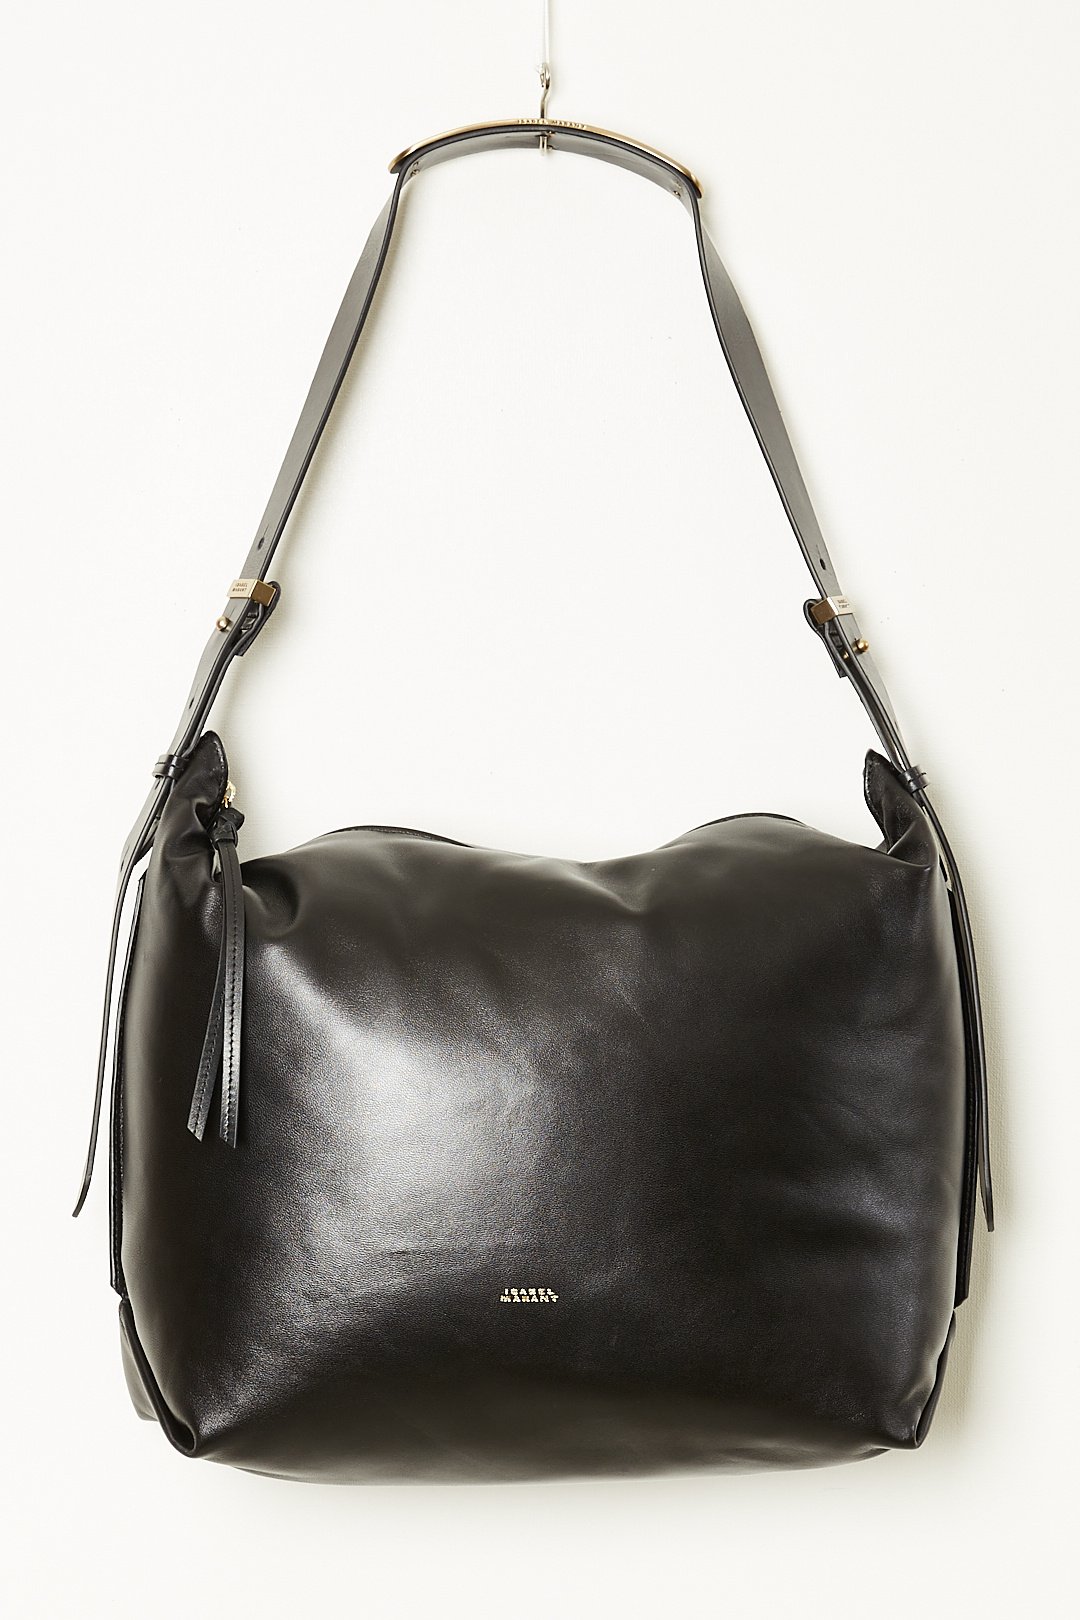 Isabel Marant Leyden leather bag